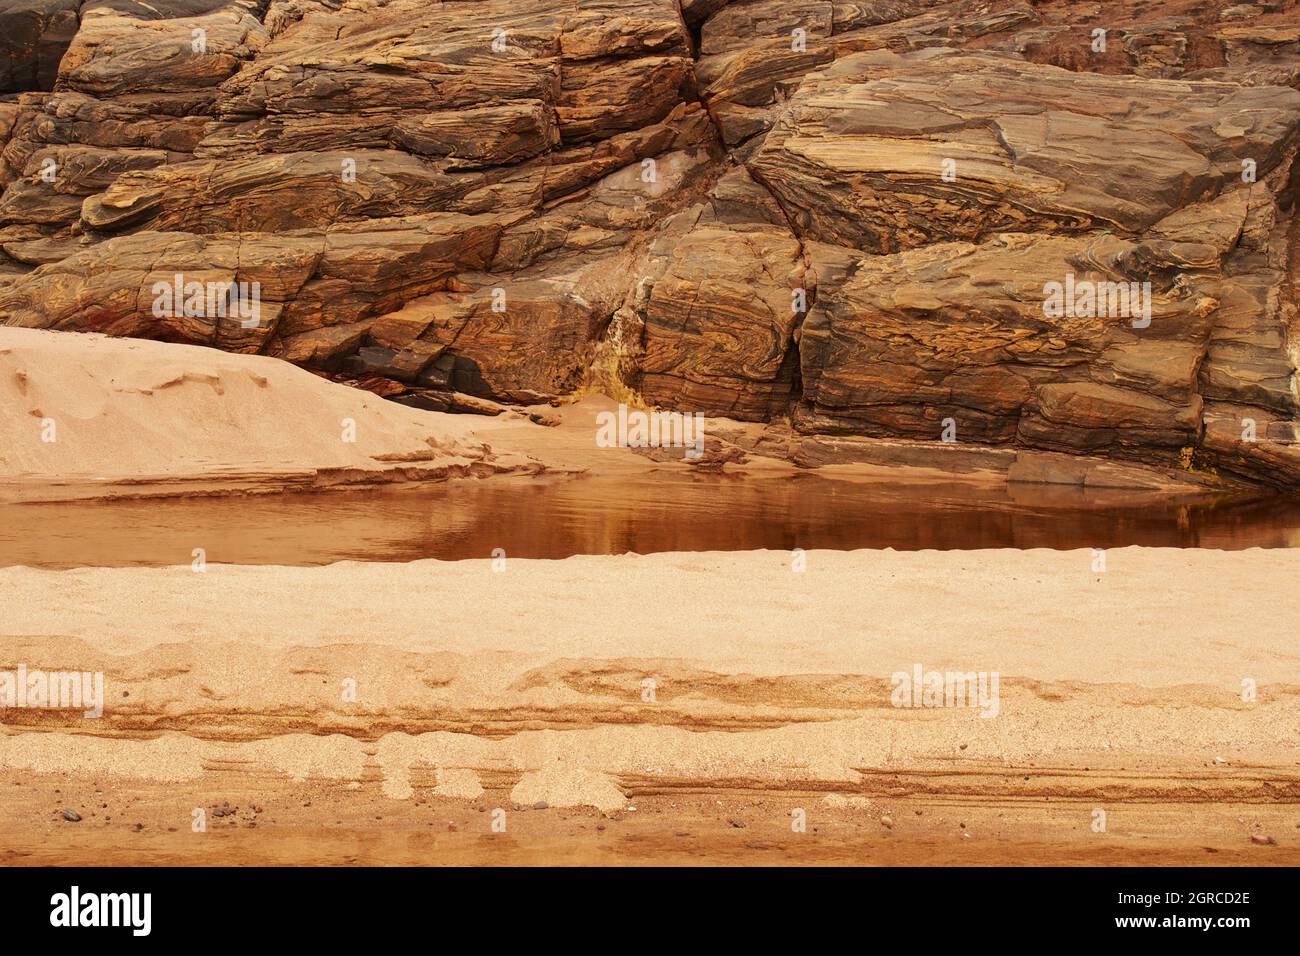 Strutture naturali di roccia e sabbia nella baia di Sandwood, Sutherland, Scozia, dove un fiume entra sulla spiaggia mostrando la roccia dei gneiss di Lewisian Foto Stock